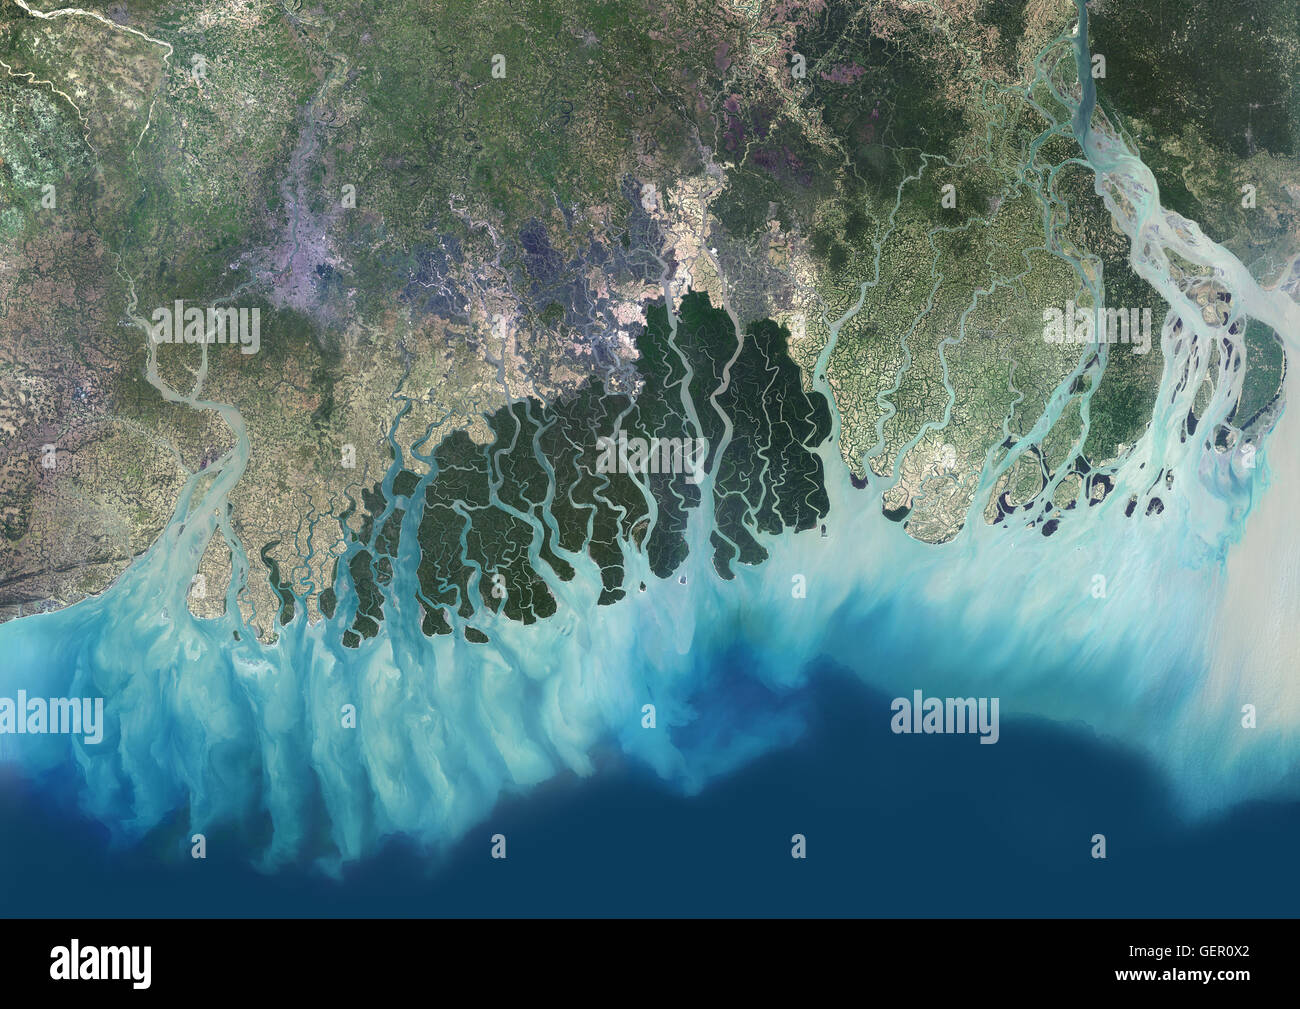 Satelliten-Ansicht der Ganges River Delta, Bangladesch, Indien. Auch bekannt als das Brahmaputra-Delta, es mündet in den Golf von Bengalen. Kalkutta liegt im unteren Ganges Delta entlang des Hooghly River (im Westen auf dem Bild). Dieses Bild wurde von da zusammengestellt. Stockfoto